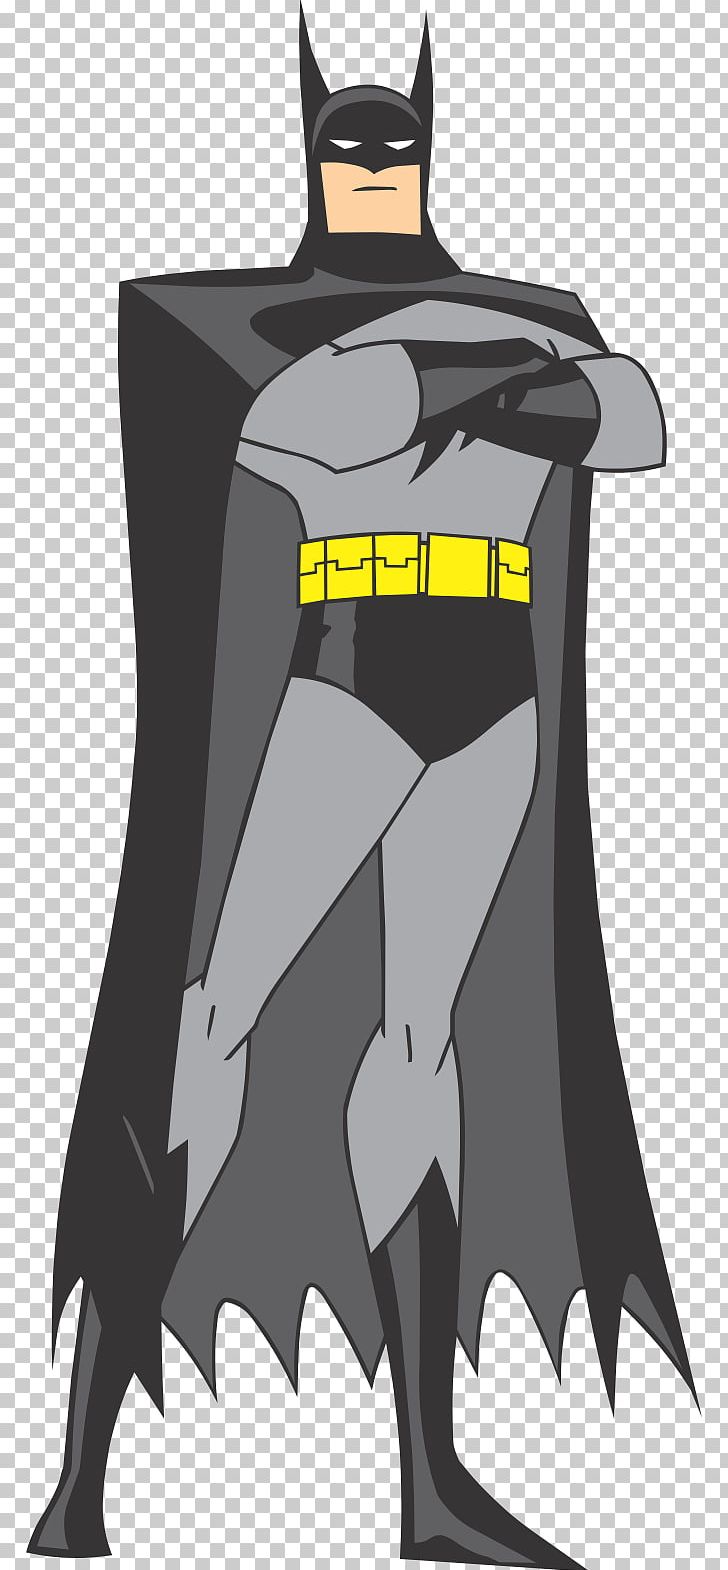 Batman Superhero PNG, Clipart, Batman, Batman Png, Cartoon, Digital Image, Download Free PNG Download